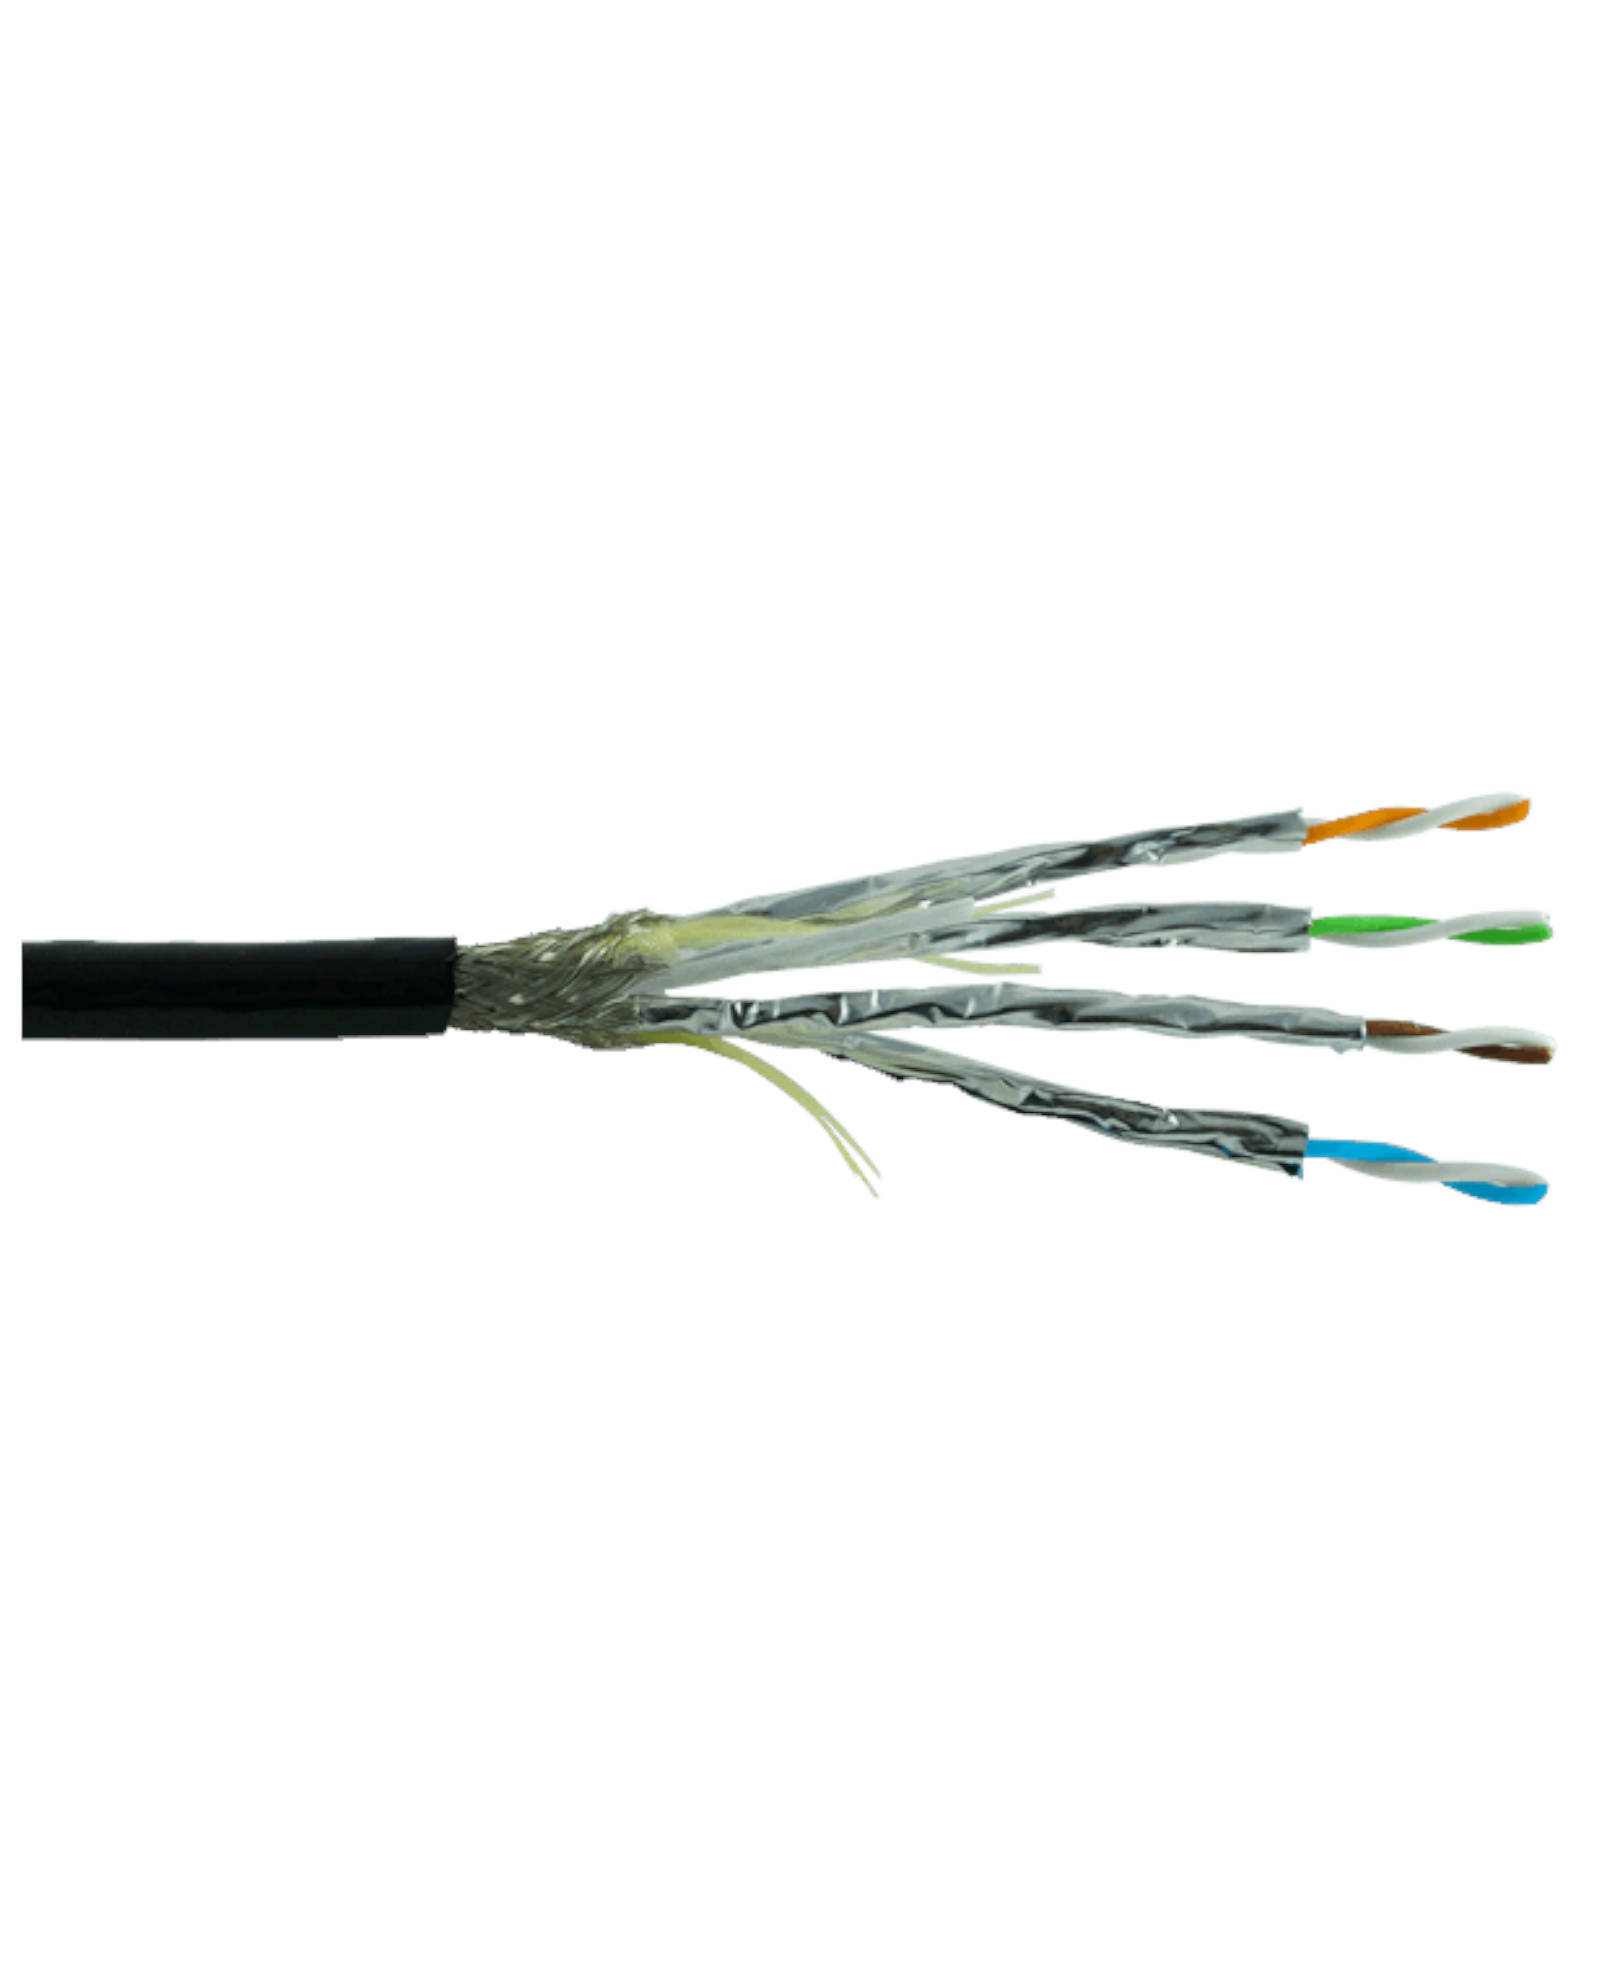 Tmb Proplex Ethernet Cables